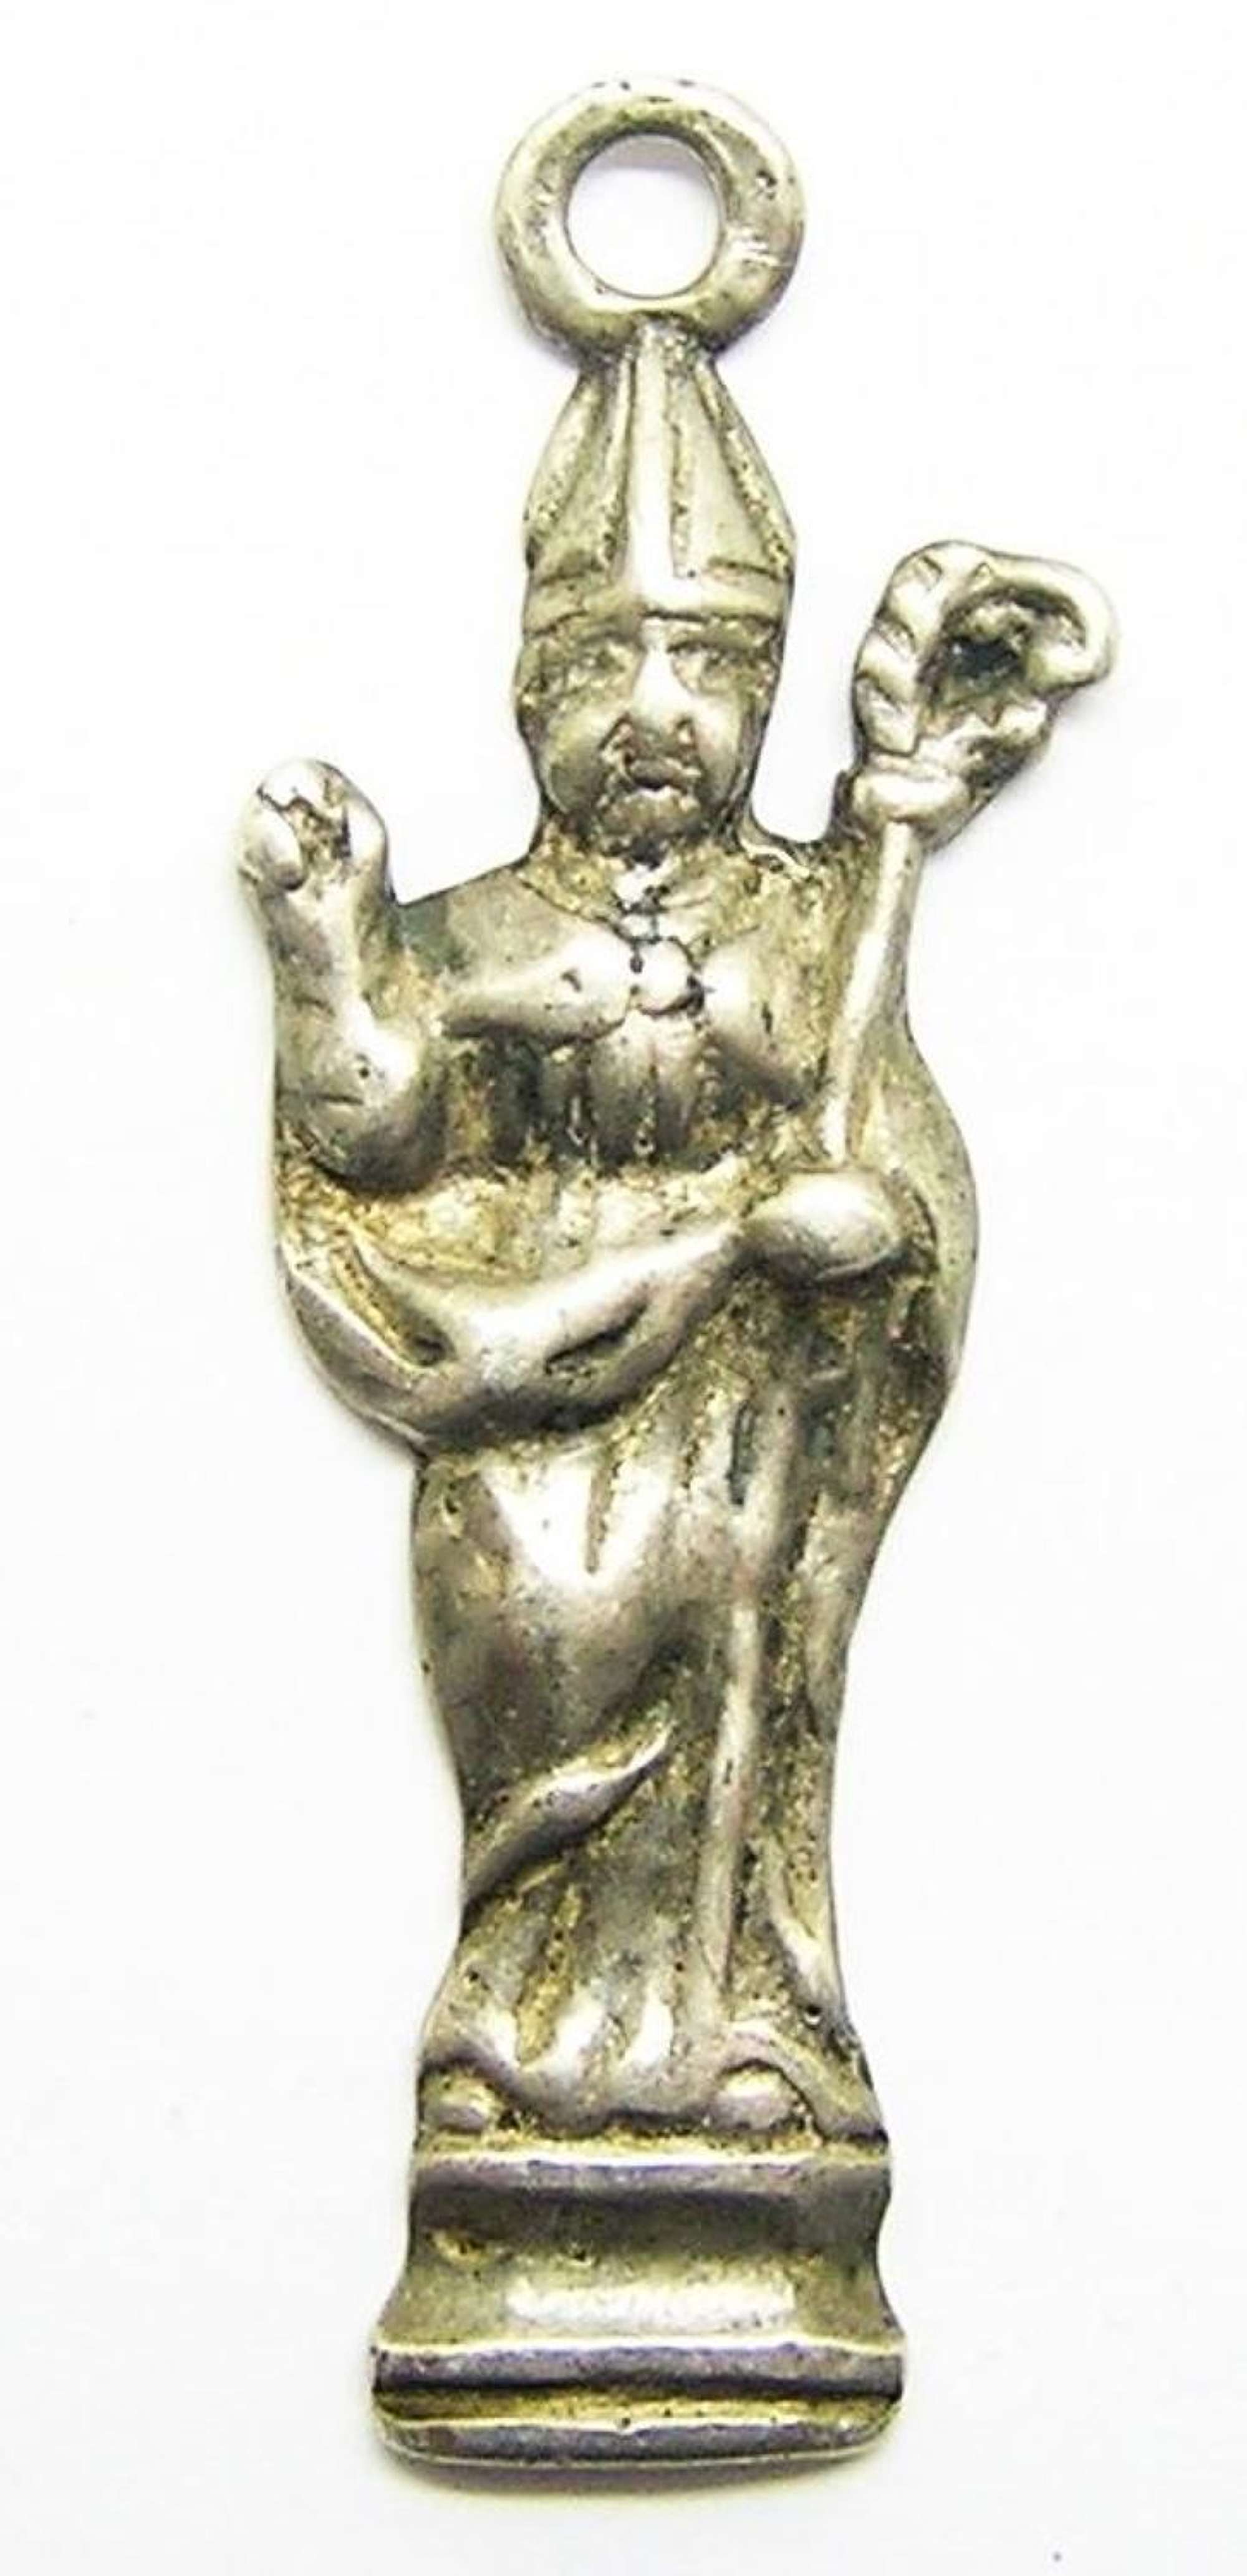 Medieval silver pendant of St. Eligius patron of silversmiths